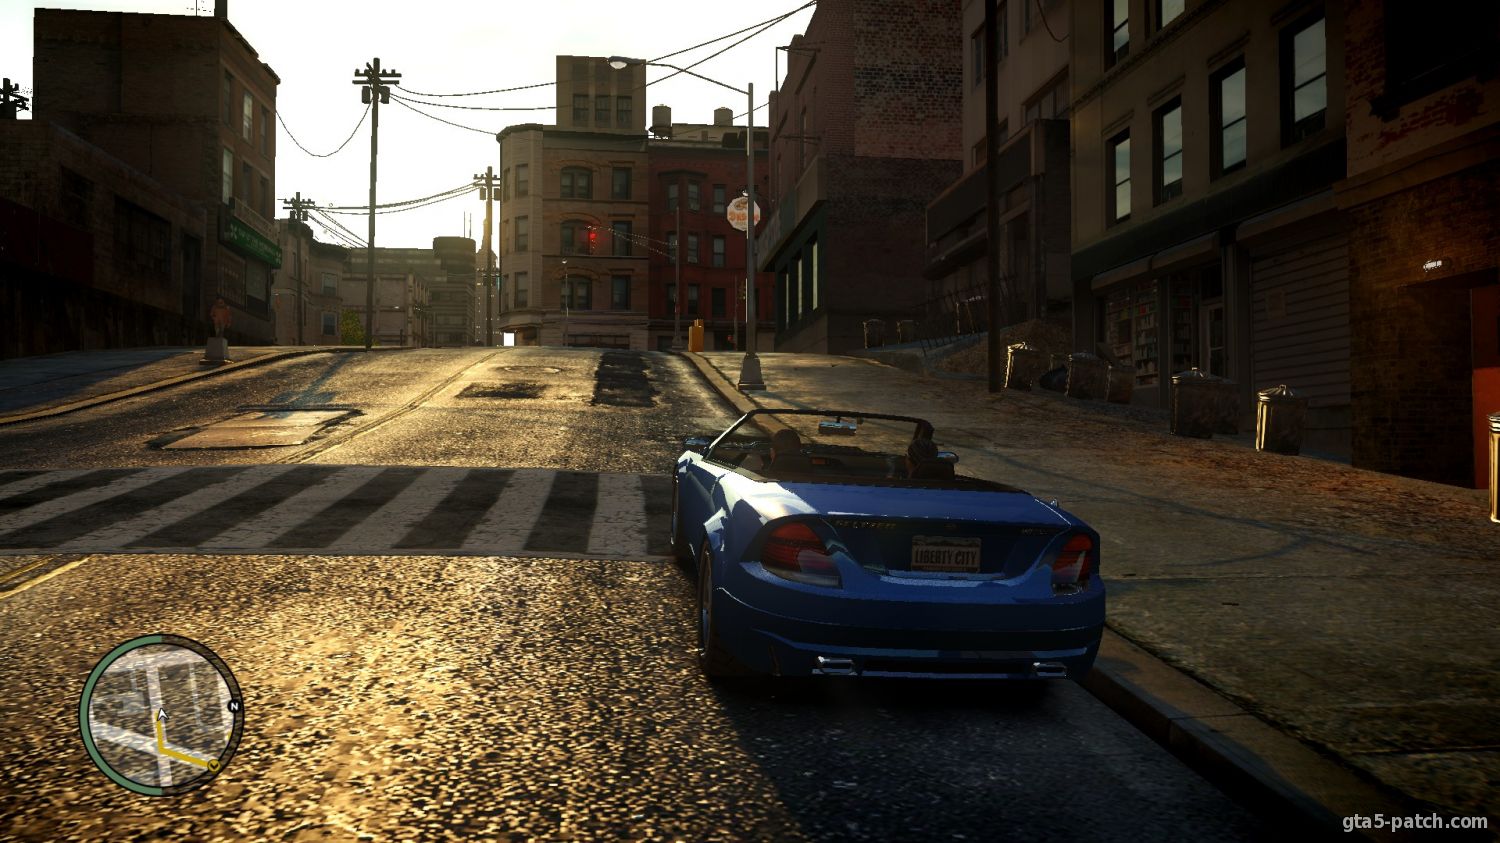 Графика в GTA 5 на PC - Обзор лучших модов